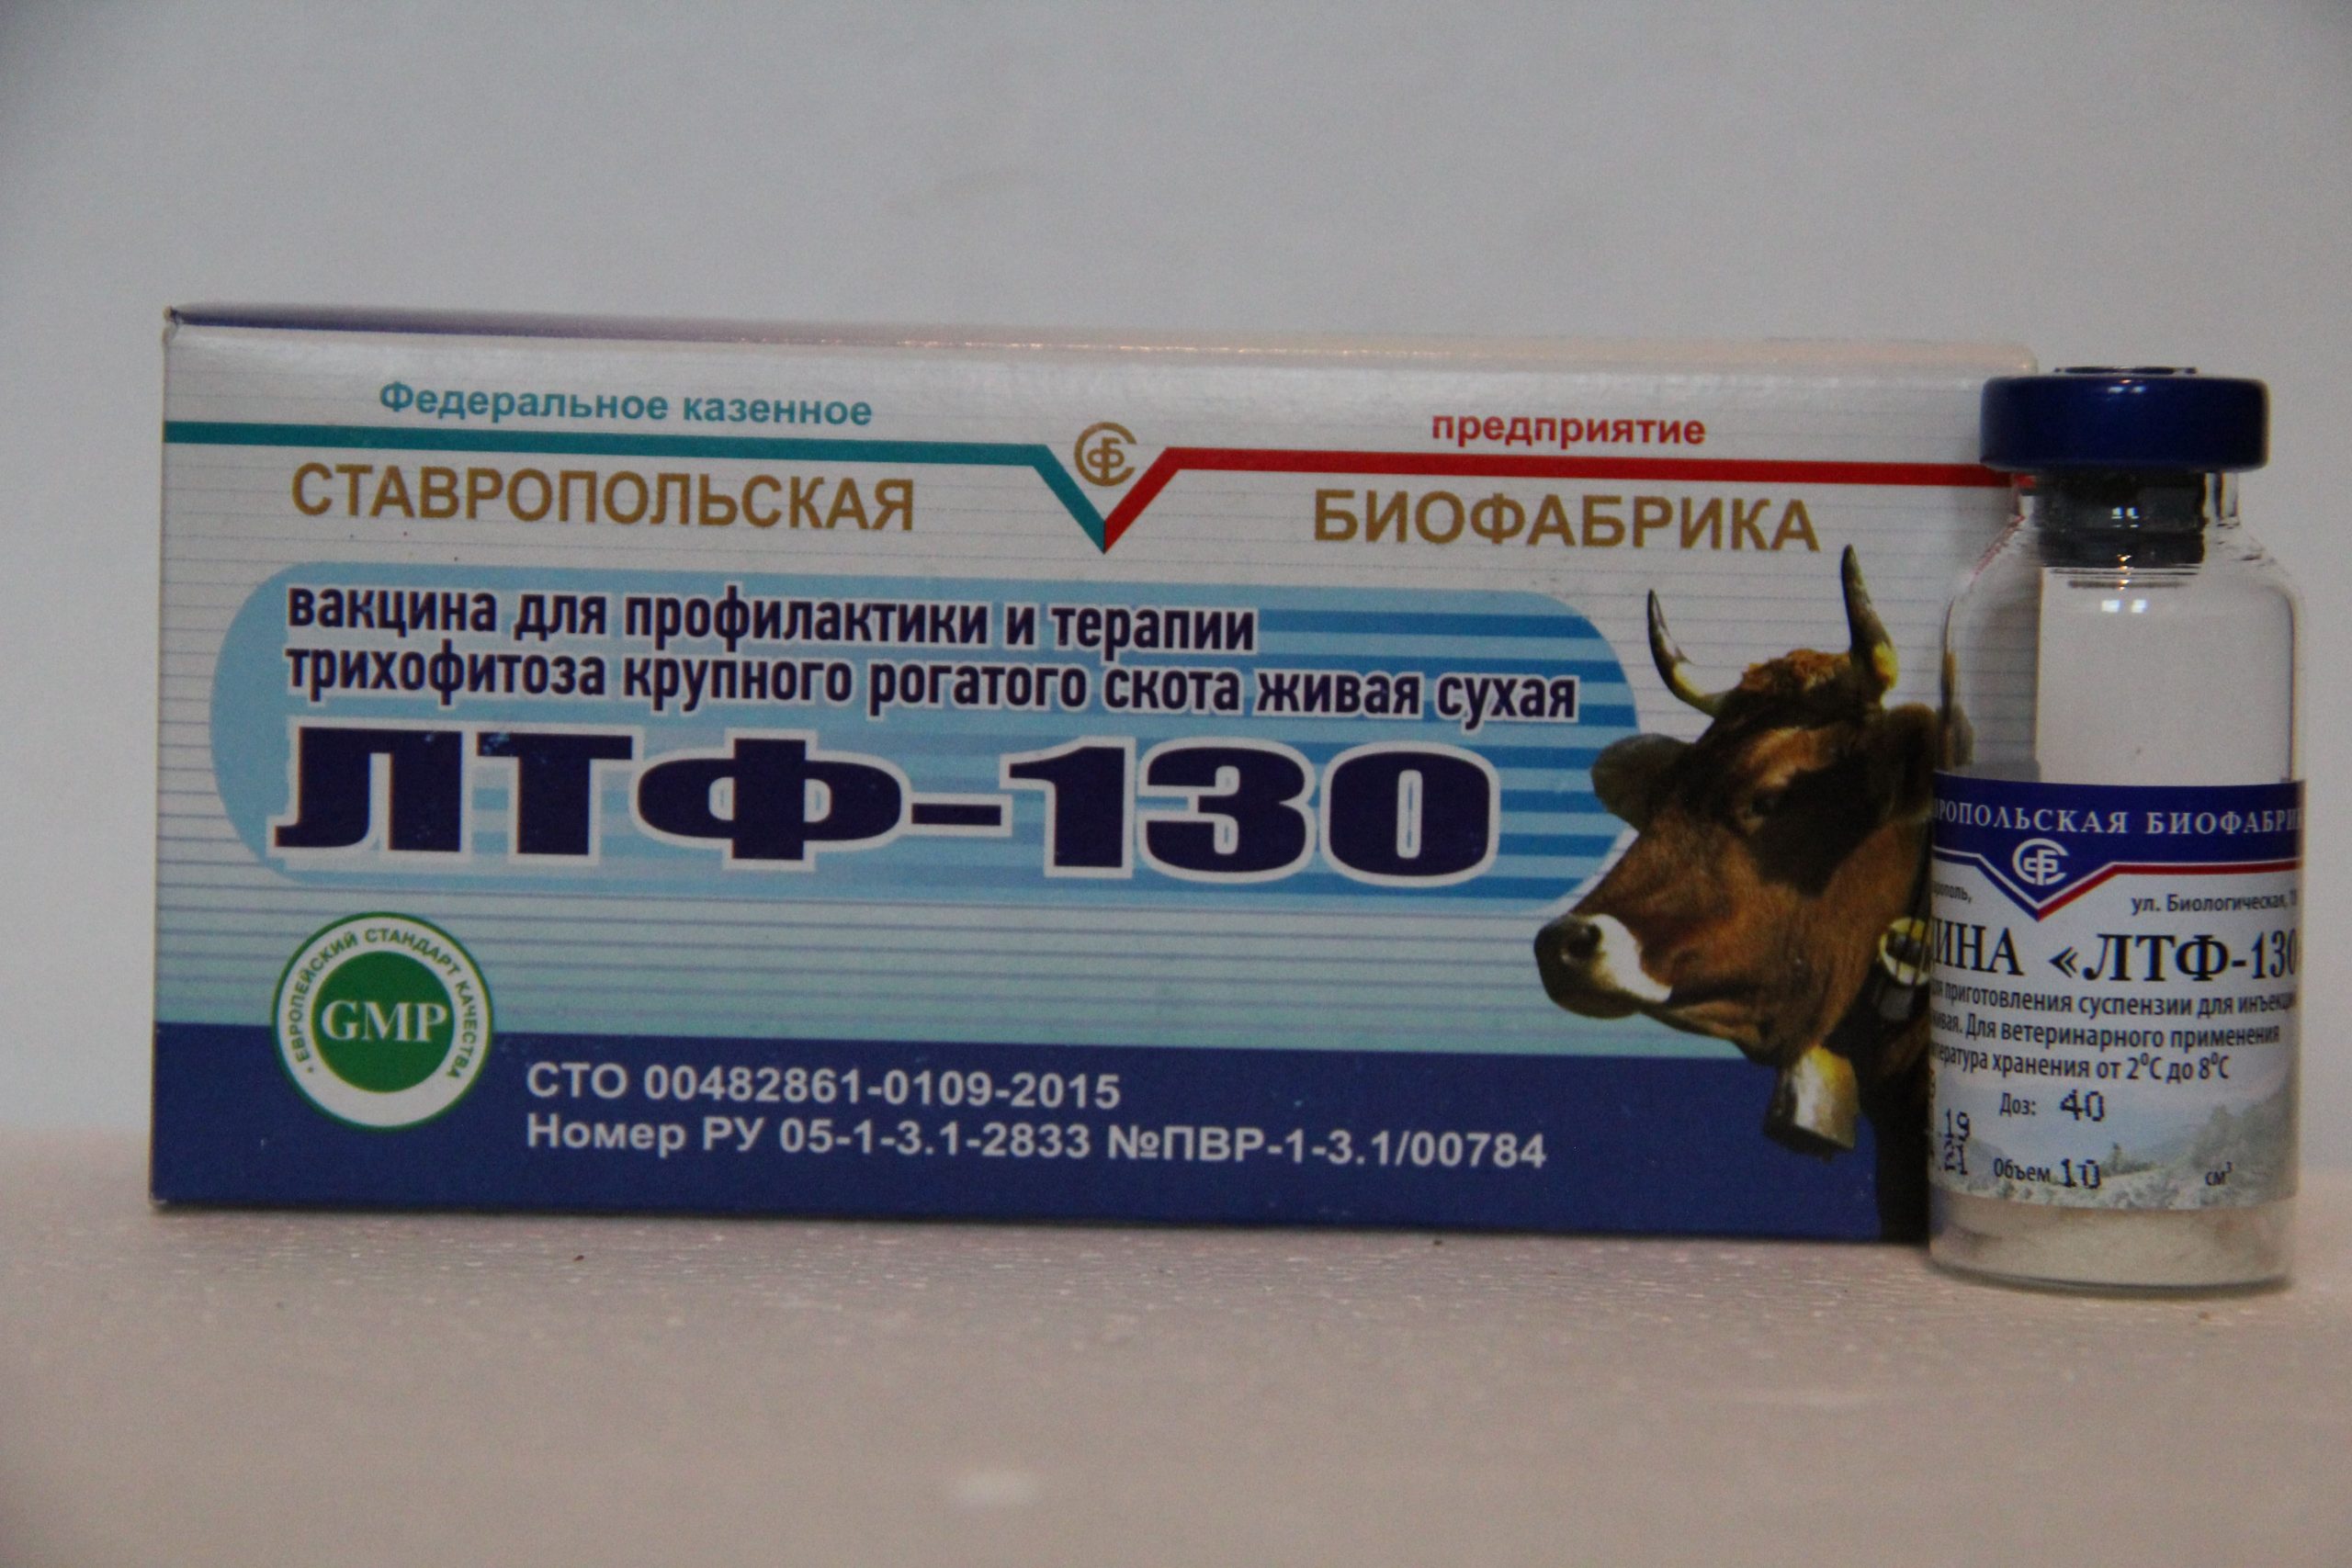 О применении в ветеринарии вакцины лтф 130 для крс (крупного рогатого скота)